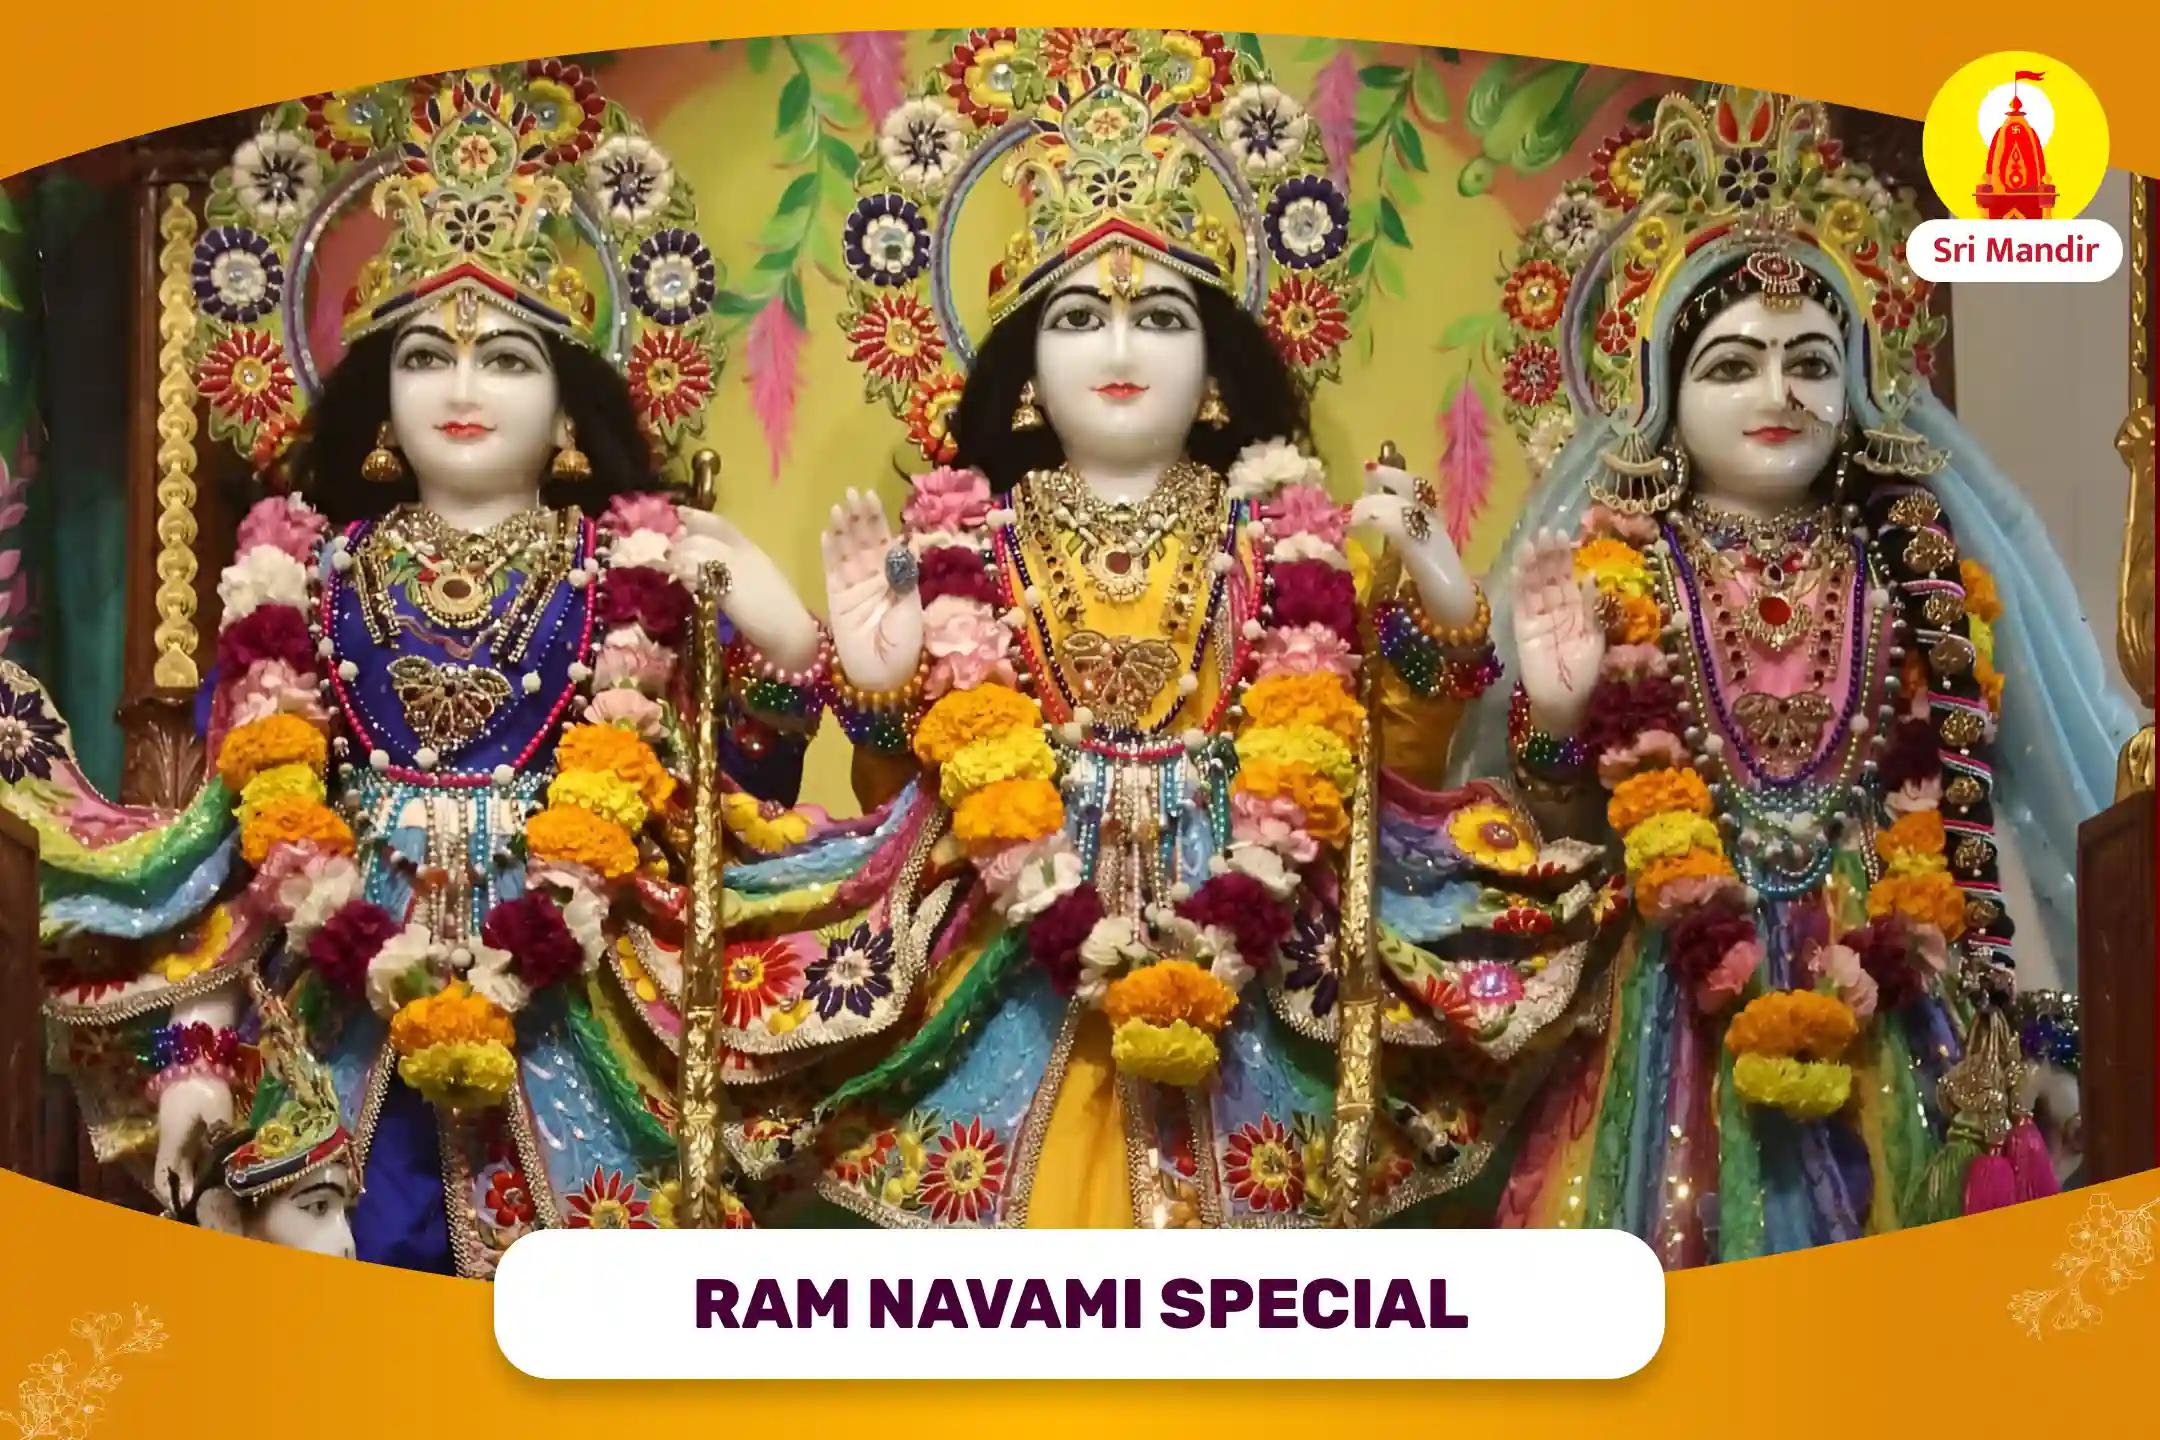 Ram Navami Special Shri Ram Namaskar Ashtakam stotra path, Shri Ram Rajya Abhishek Maha Puja and Saryu Deep Daan